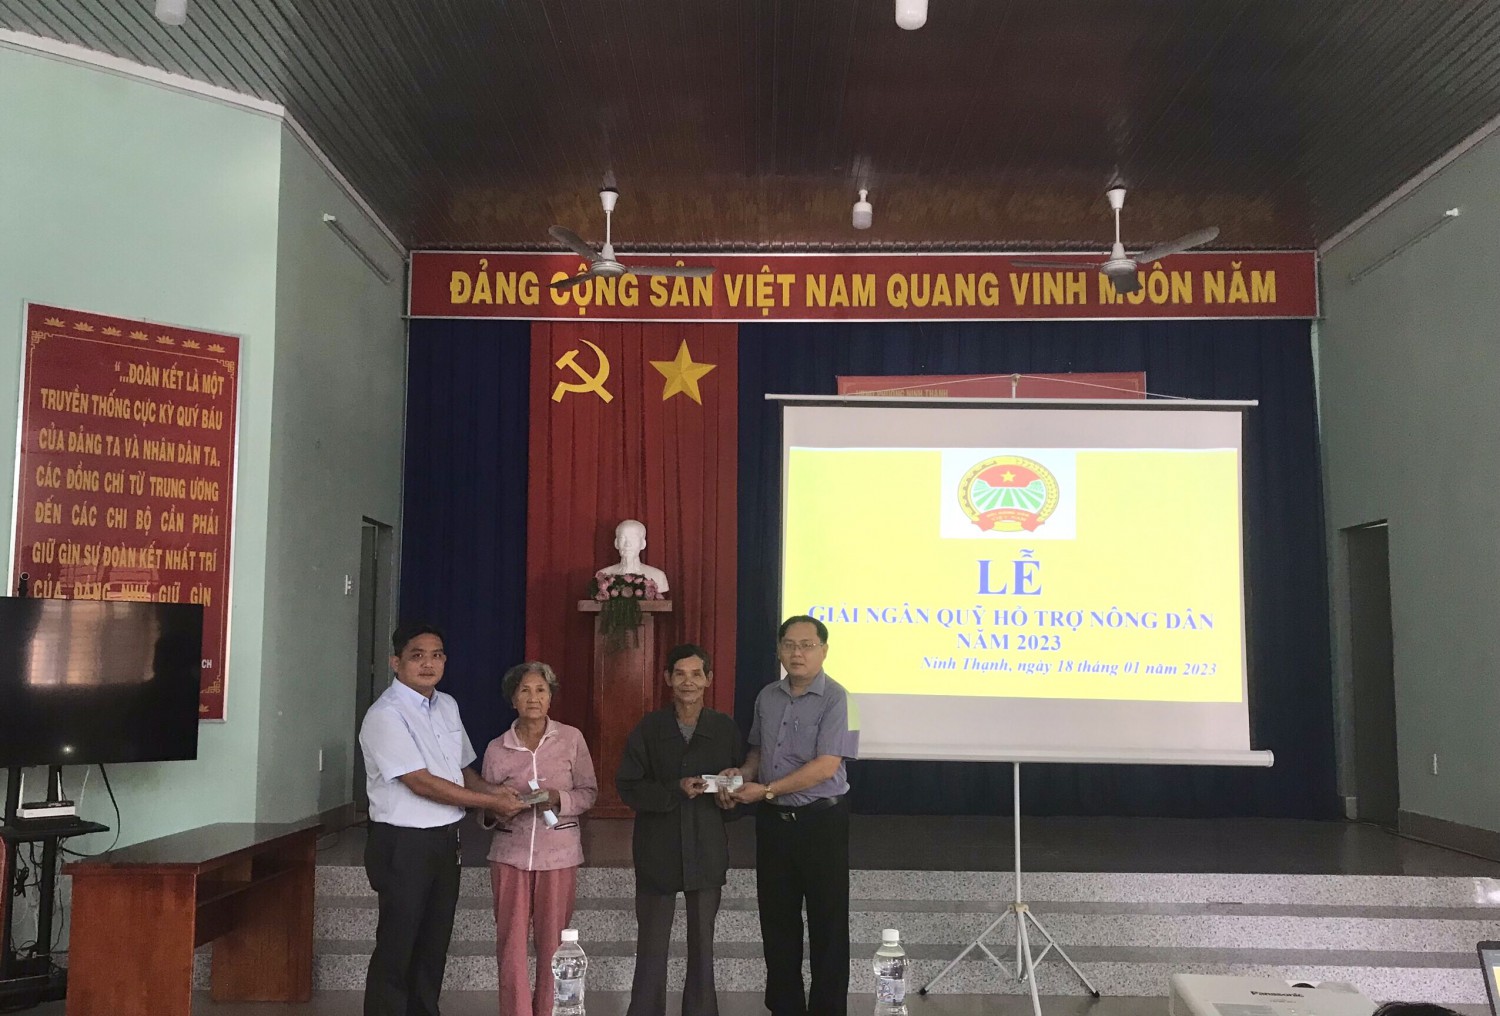 Hội Nông dân phường Ninh Thạnh tổ chức lễ giải ngân vốn Quỹ hỗ trợ Nông dân năm 2023